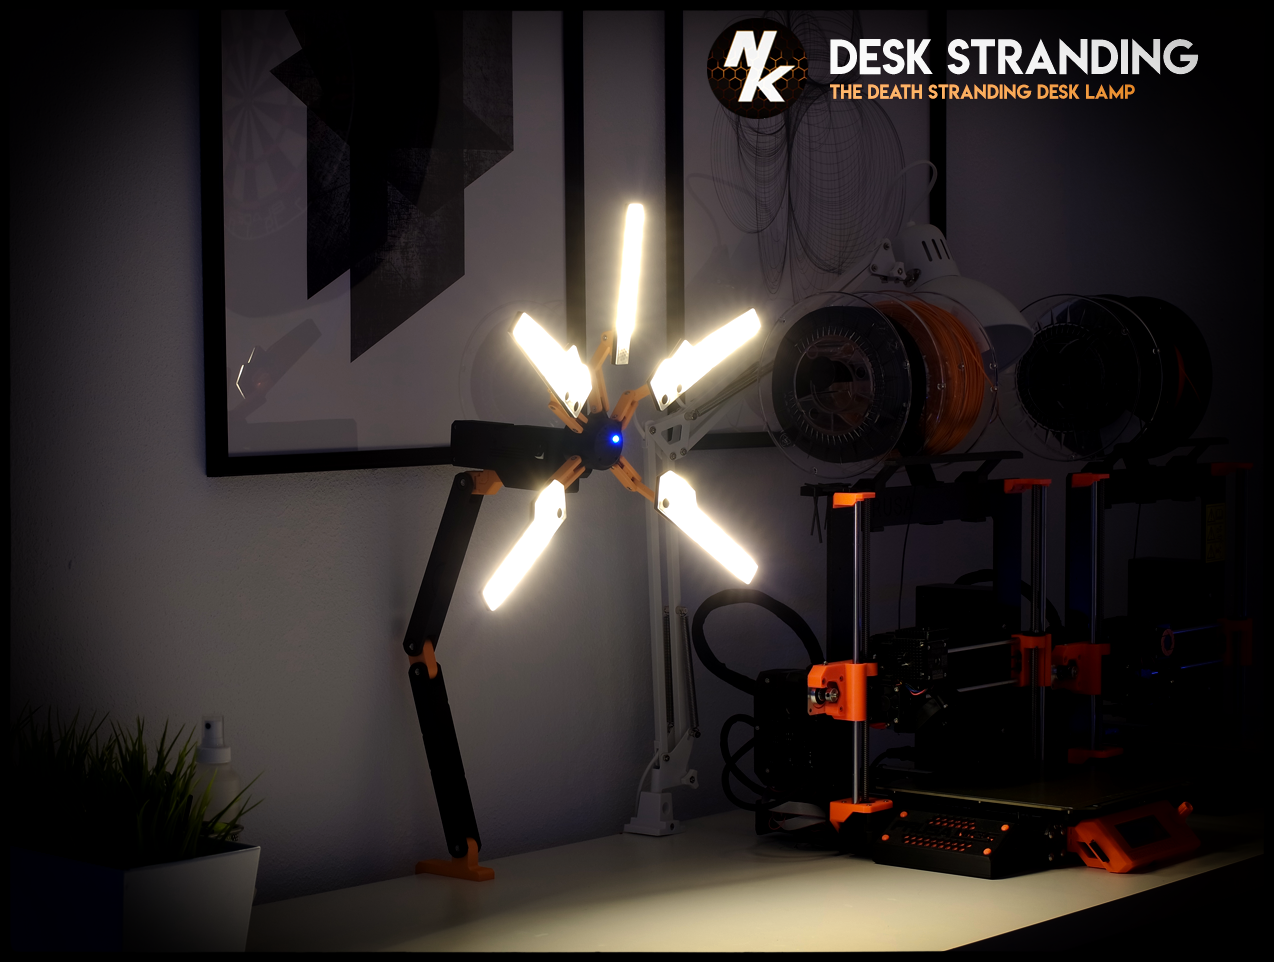 Desk Stranding - The Death Stranding Desk Lamp